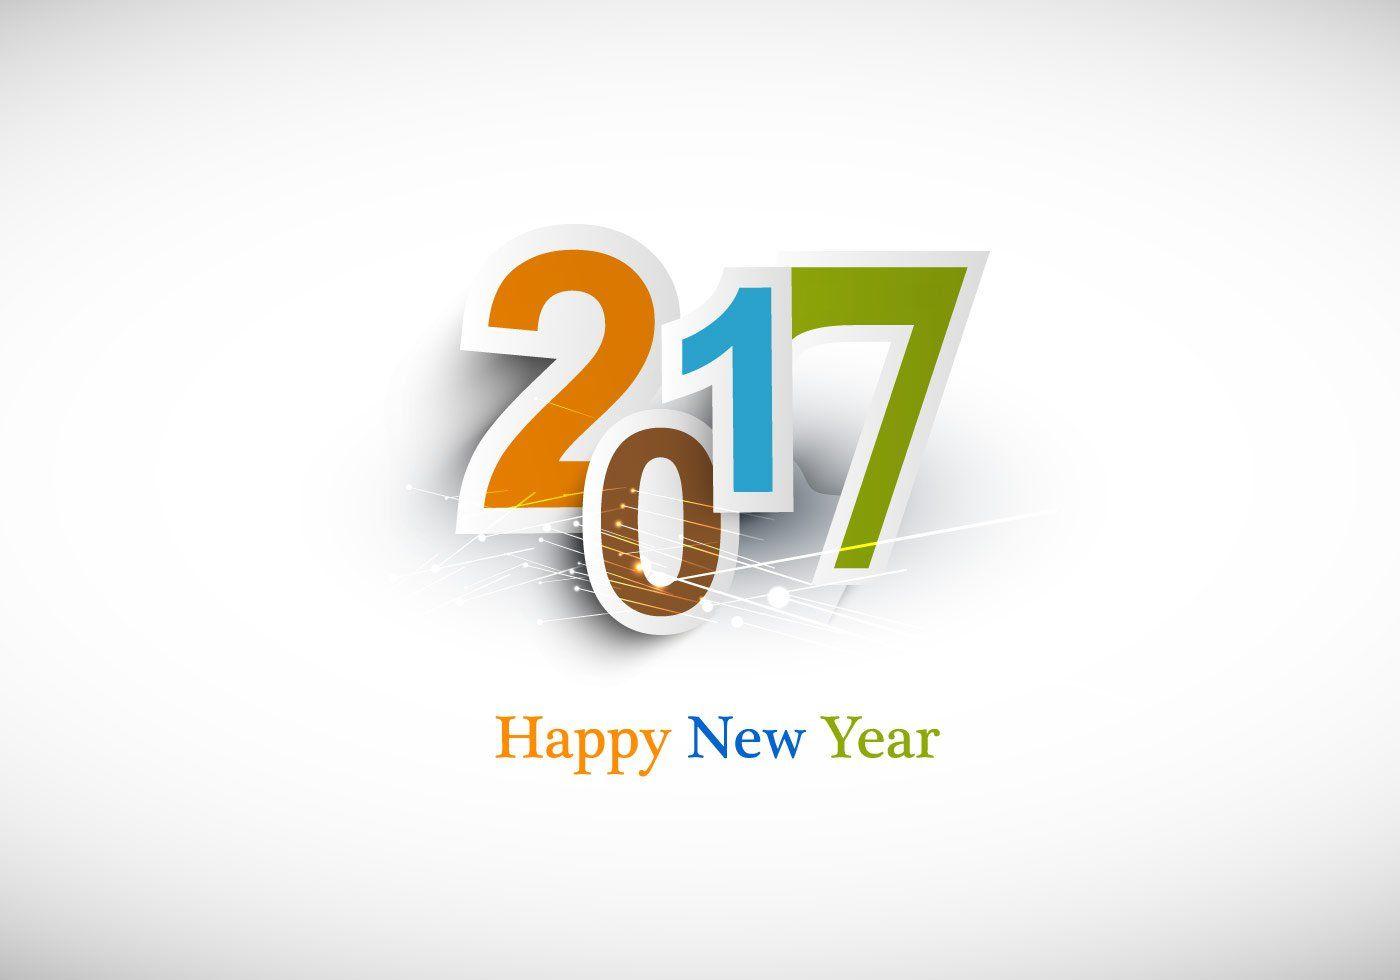 2017 Logo - Happy New Year 2017 Logo Wallpaper 11377 - Baltana